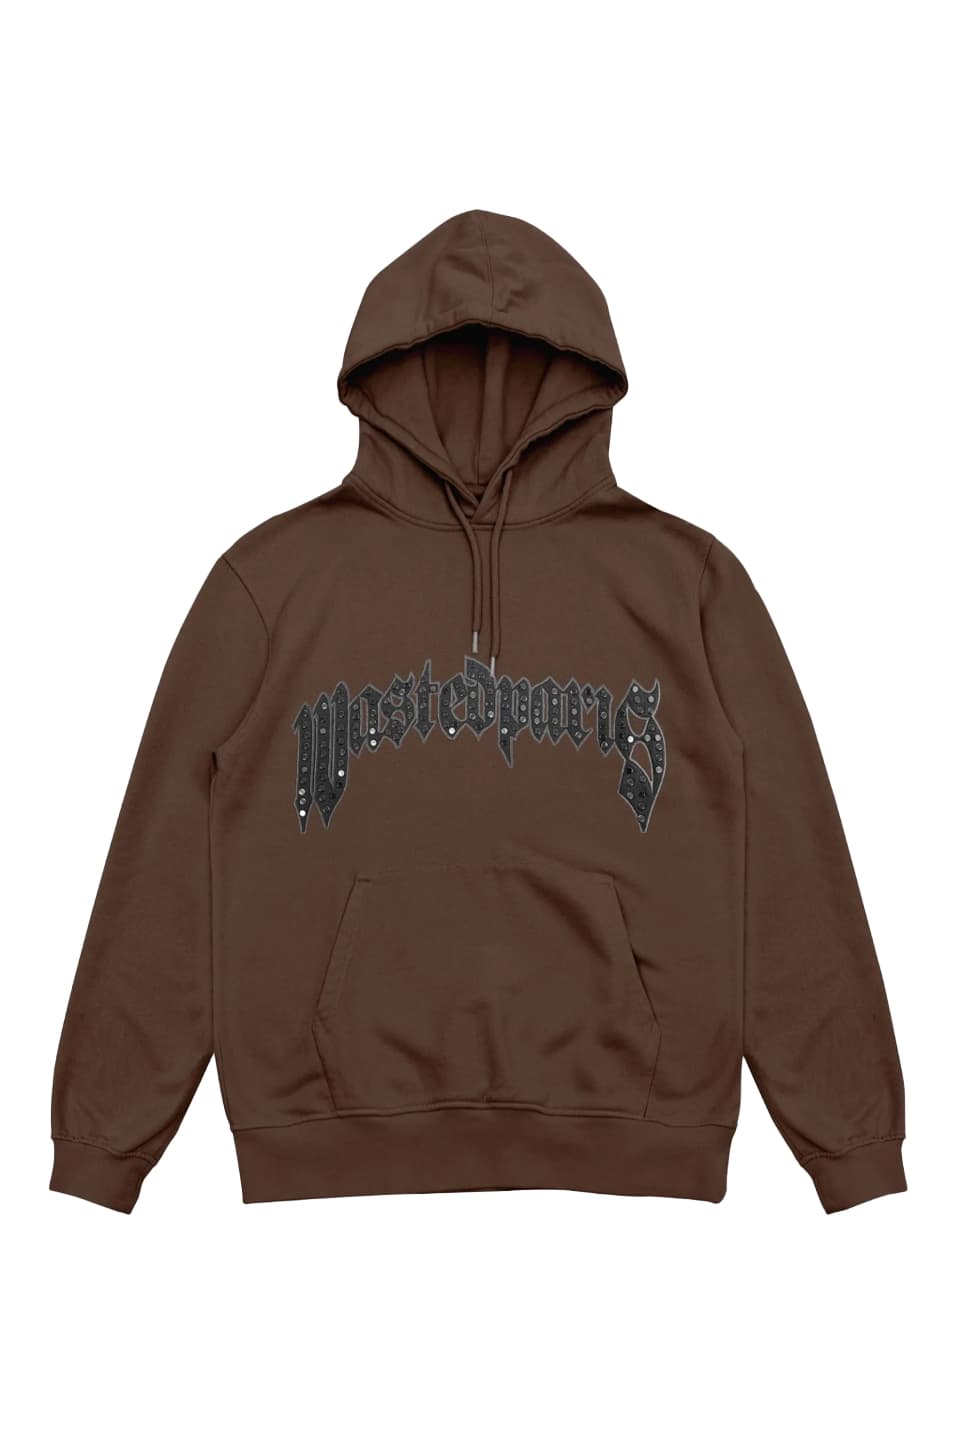 penthouseboyz hoodie - トップス